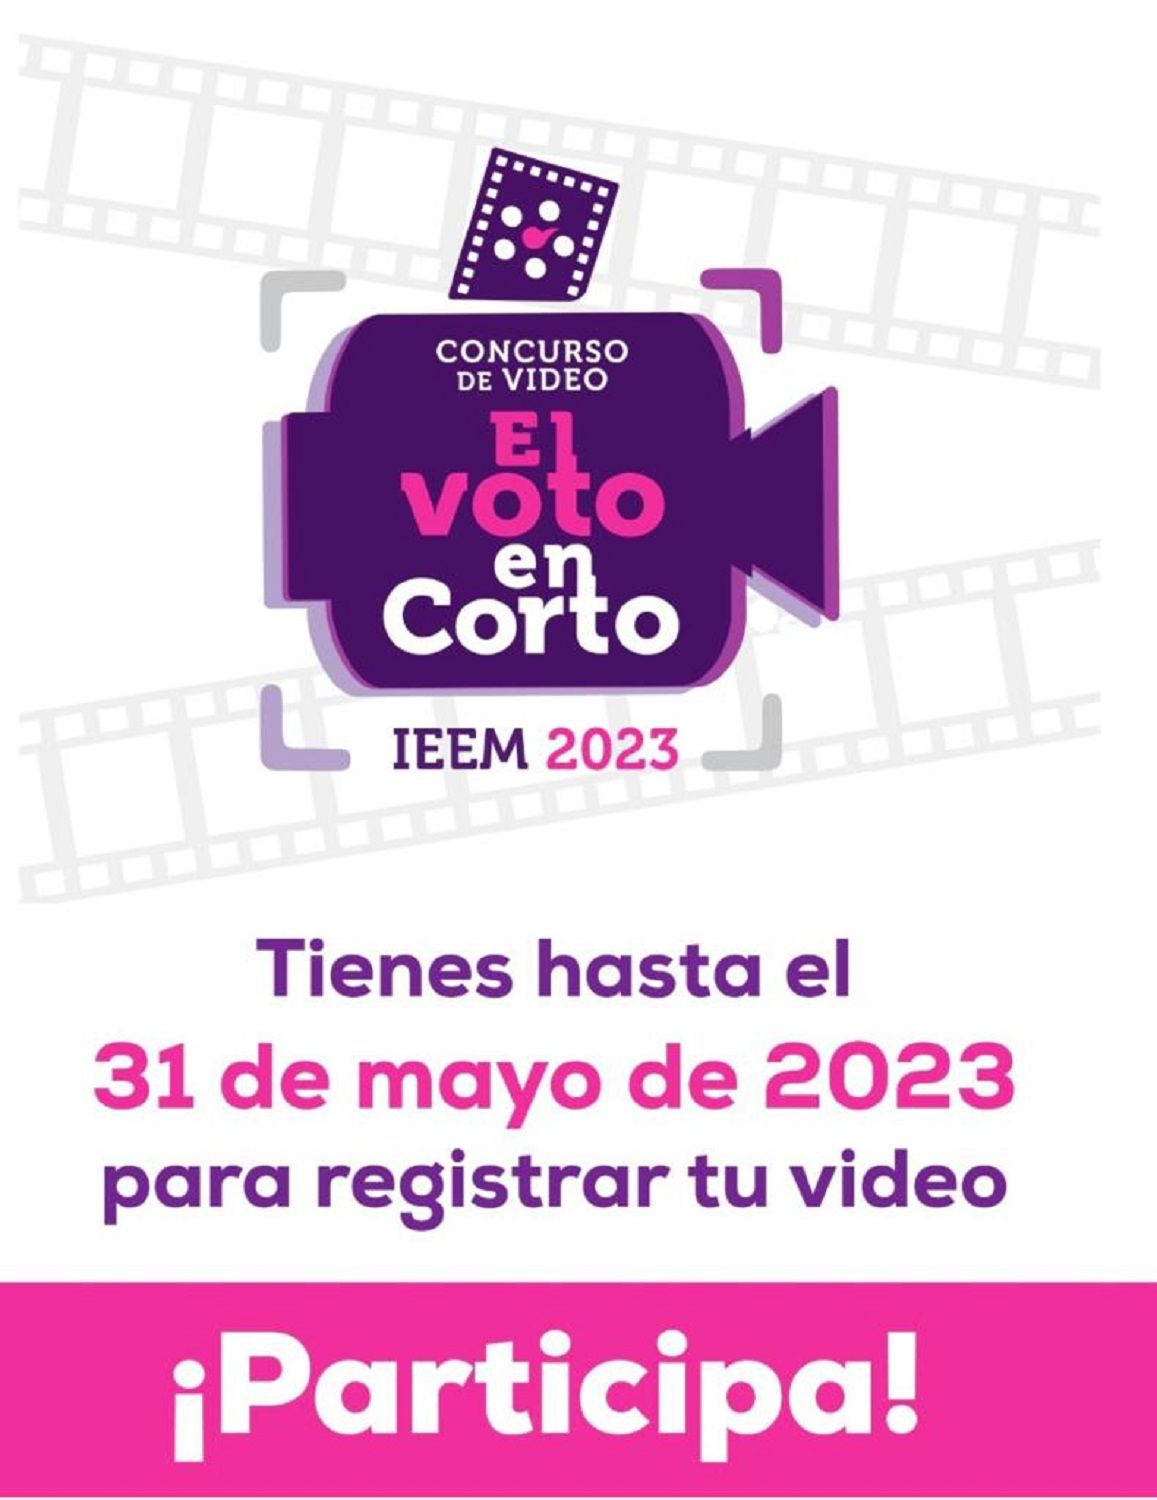 La Secretaría de Cultura y Turismo invita al concurso de vídeo ’El Voto en Corto’ organizado por el IEEM